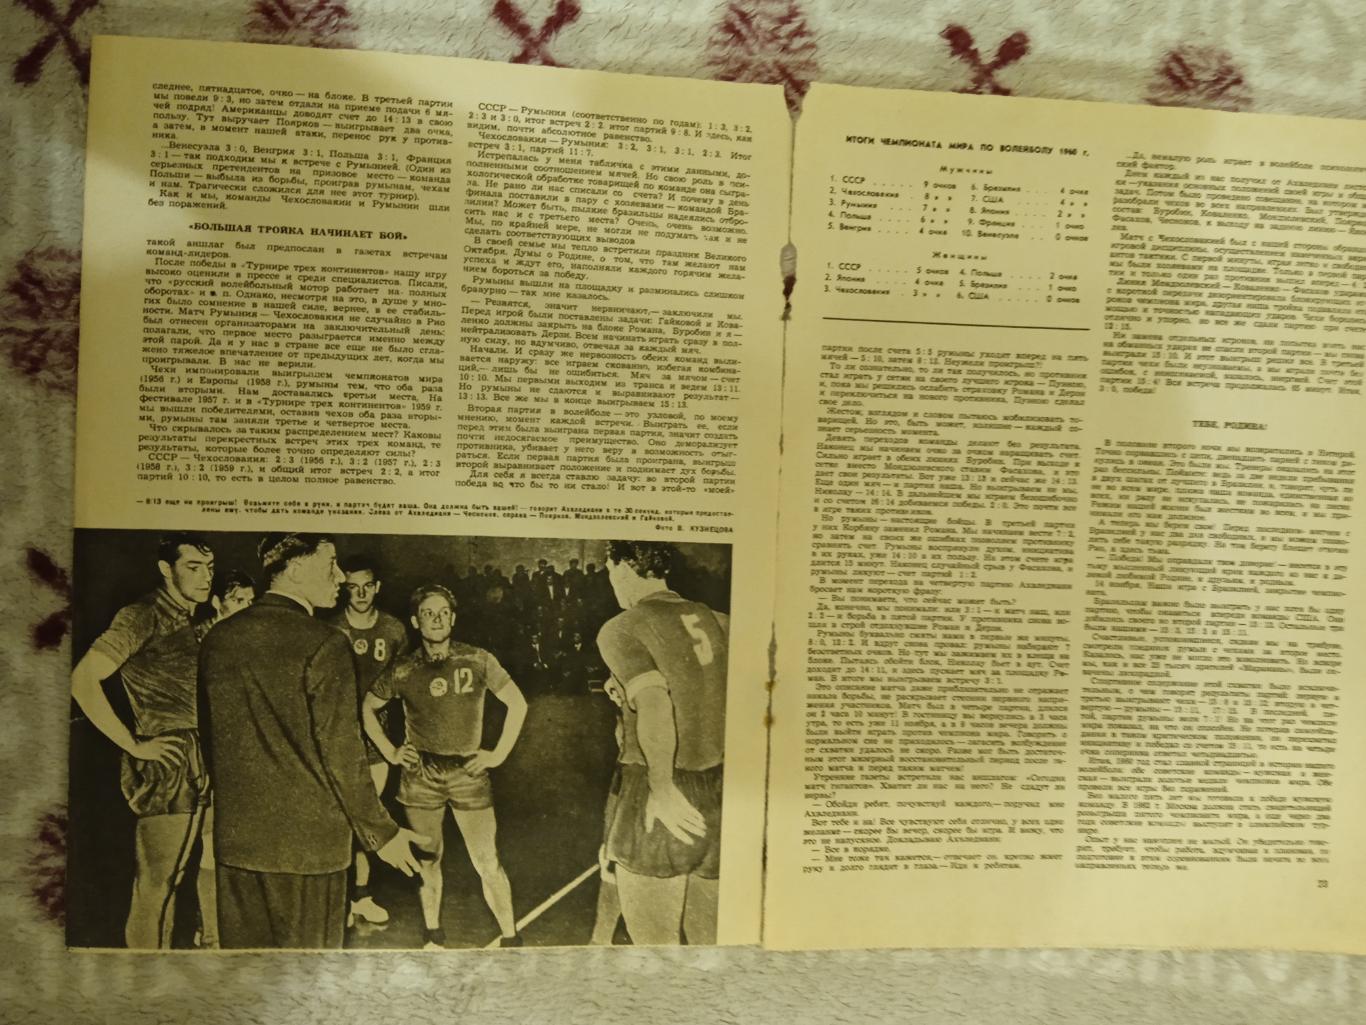 Статья.Волейбол.СССР - чемпионы мира 1960.Журнал ФиС 1961 г. 1